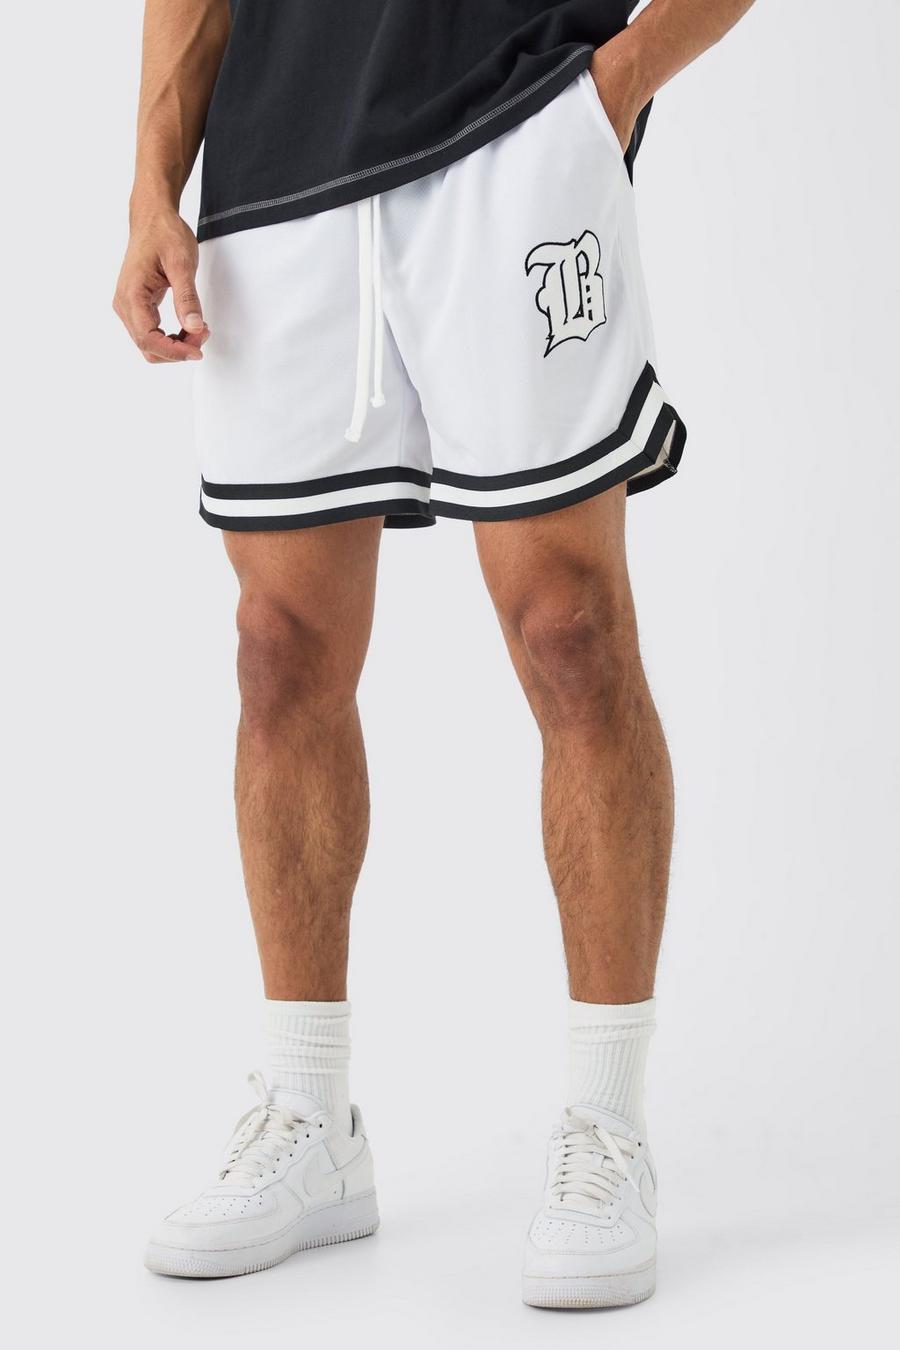 Pantaloncini da basket corti comodi in rete, White